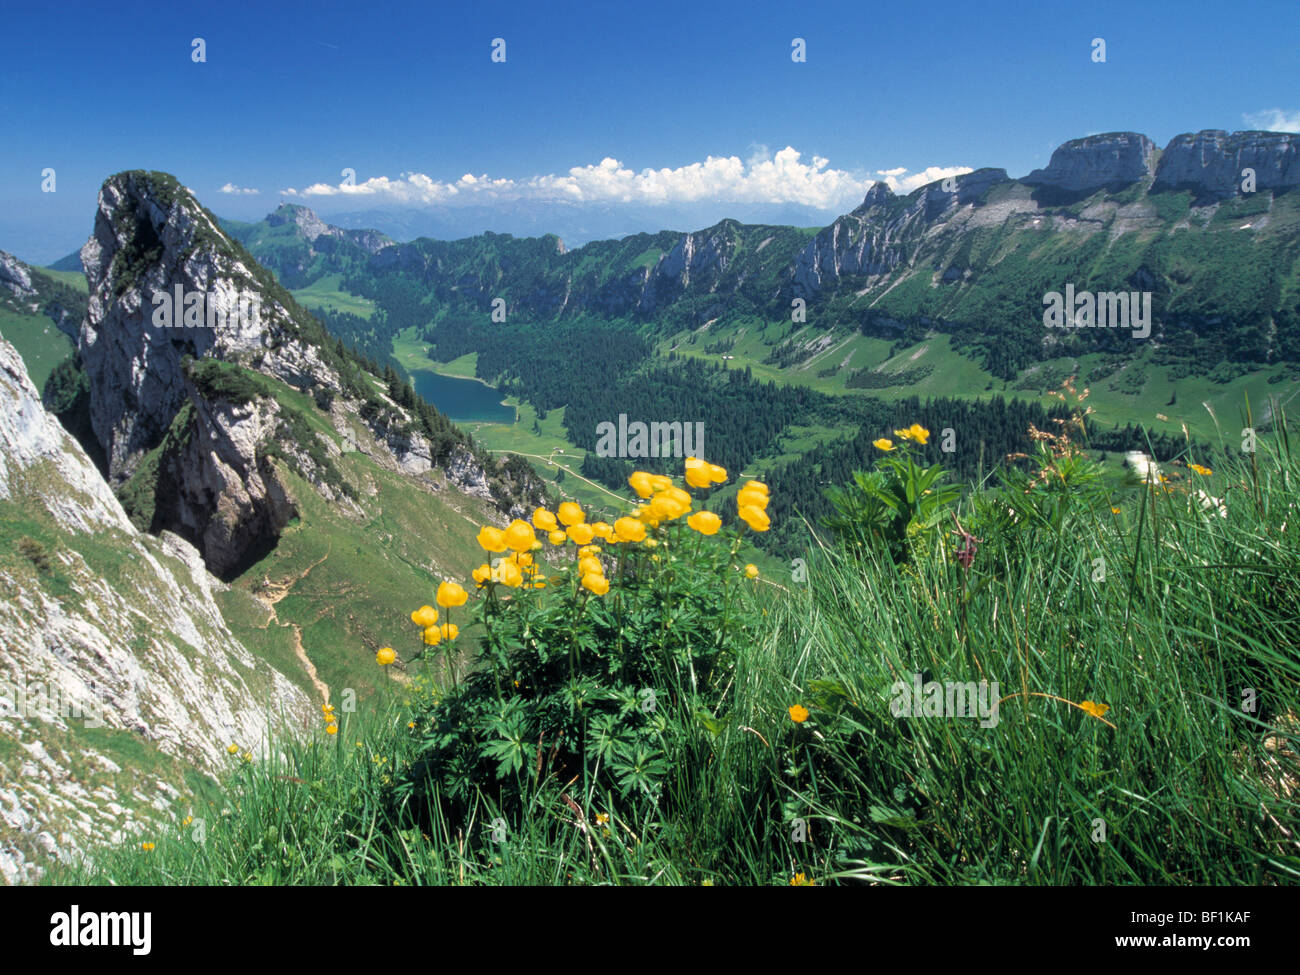 switzerland, alps, appenzeller alpen, hoher kasten kette, mountains Stock  Photo - Alamy